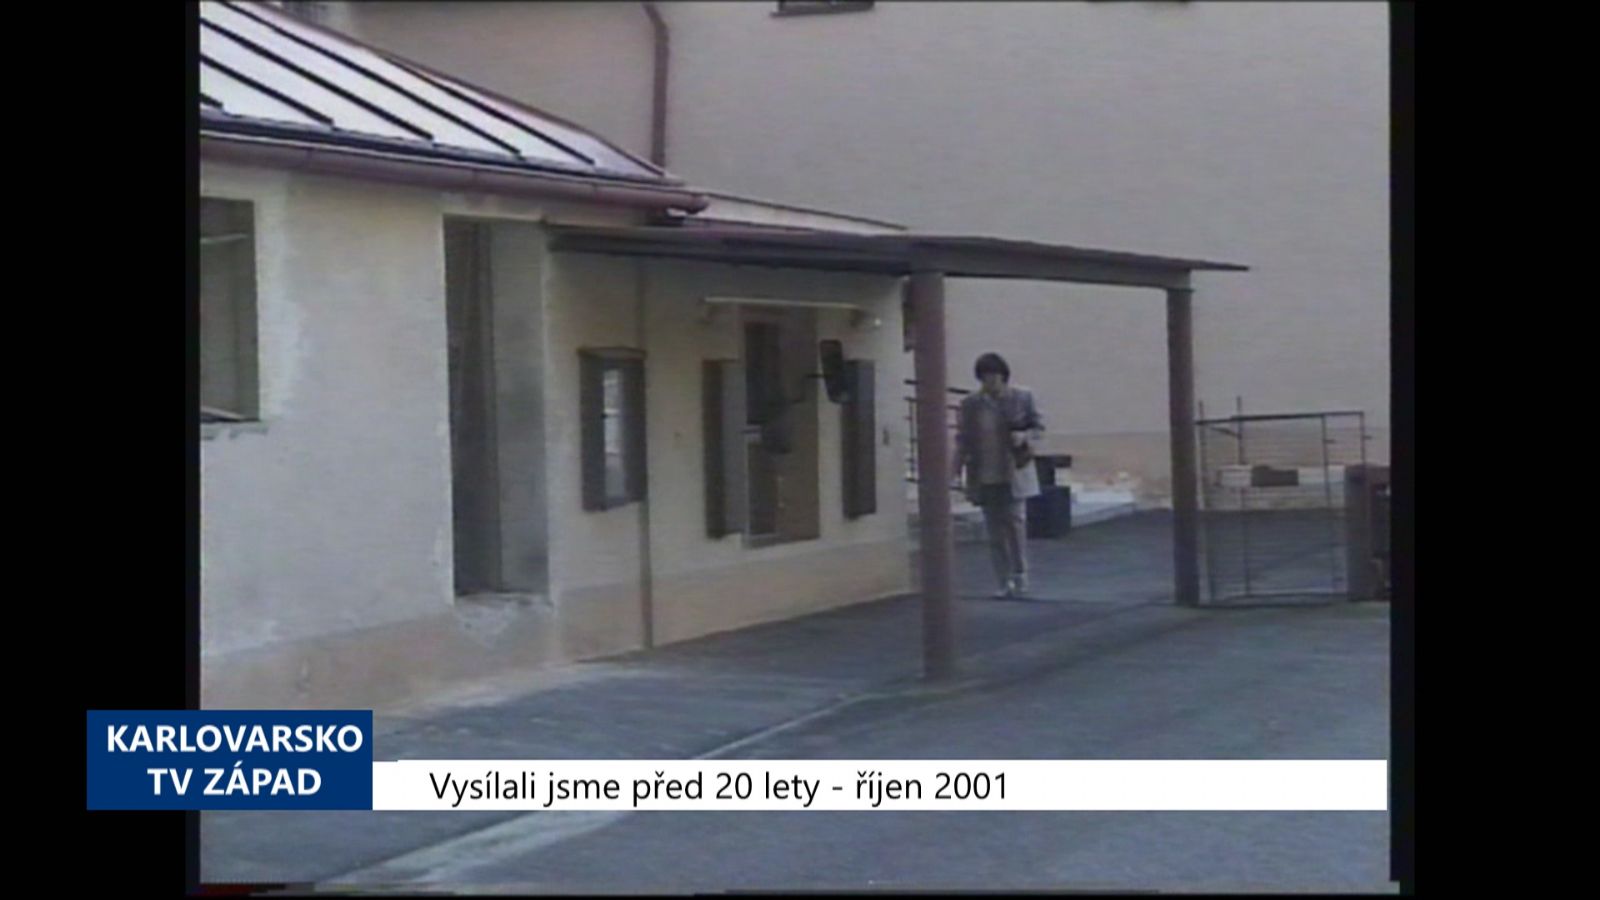 2001 – Sokolov: Spotřeba tepla v obecních bytech klesá (TV Západ)